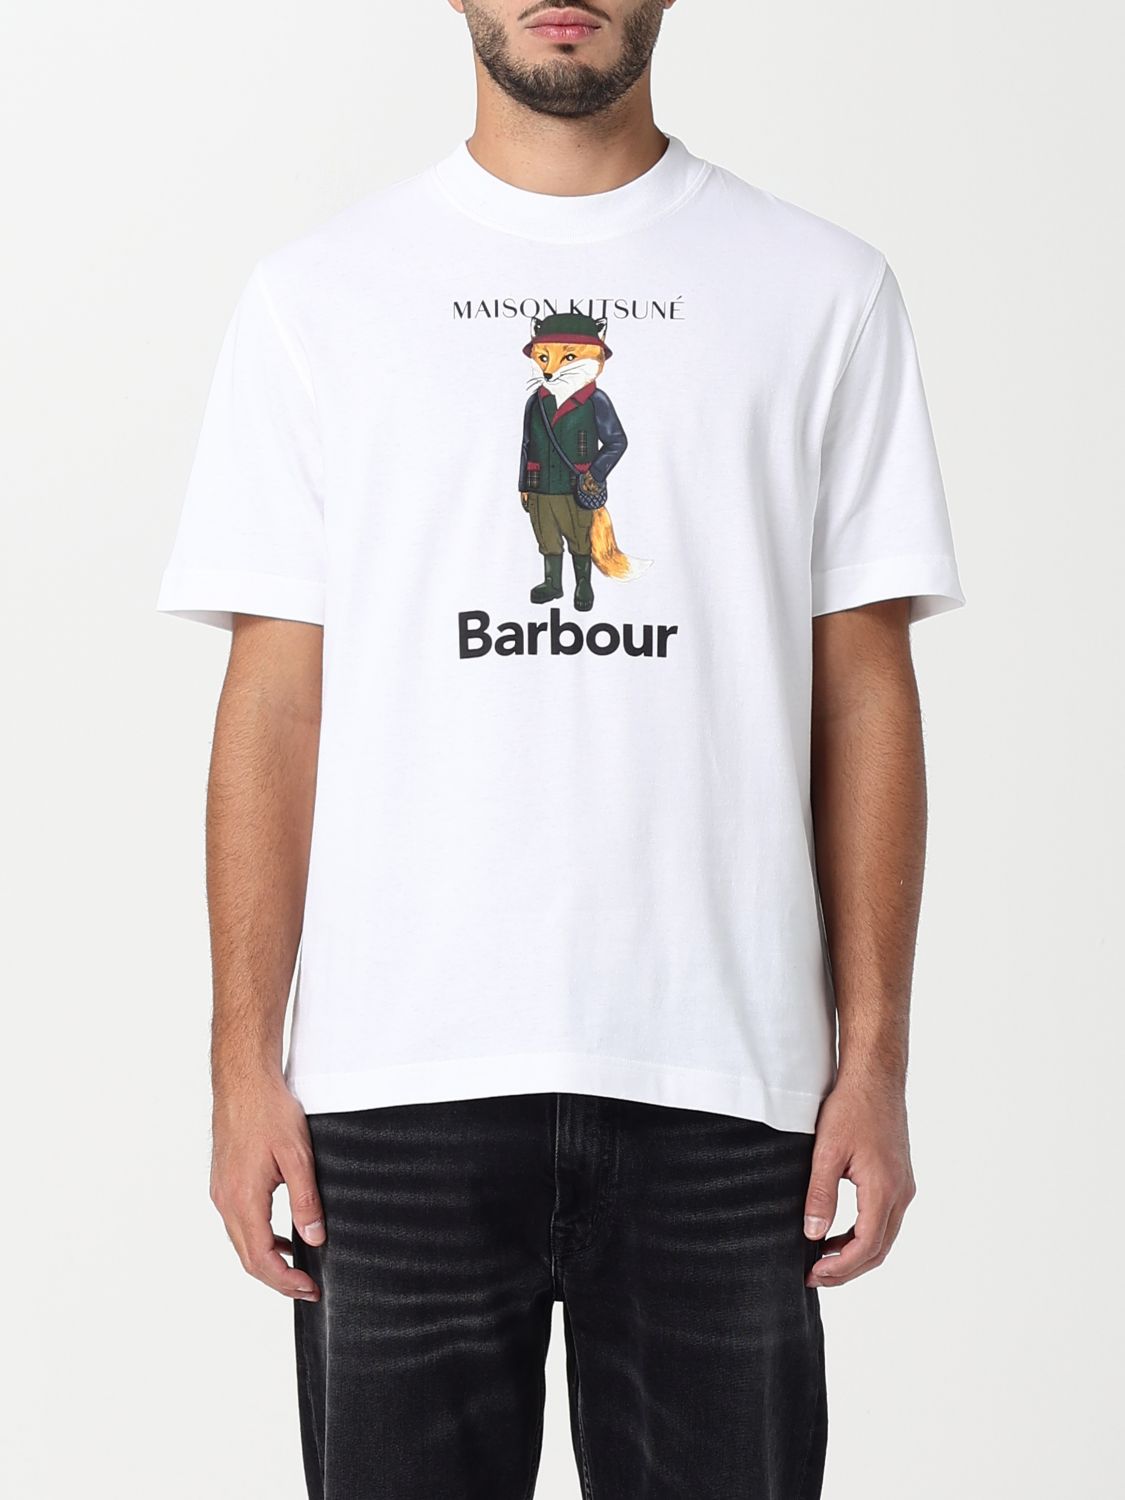 maison kitsuné x barbour T-Shirt MAISON KITSUNE X BARBOUR Men colour White